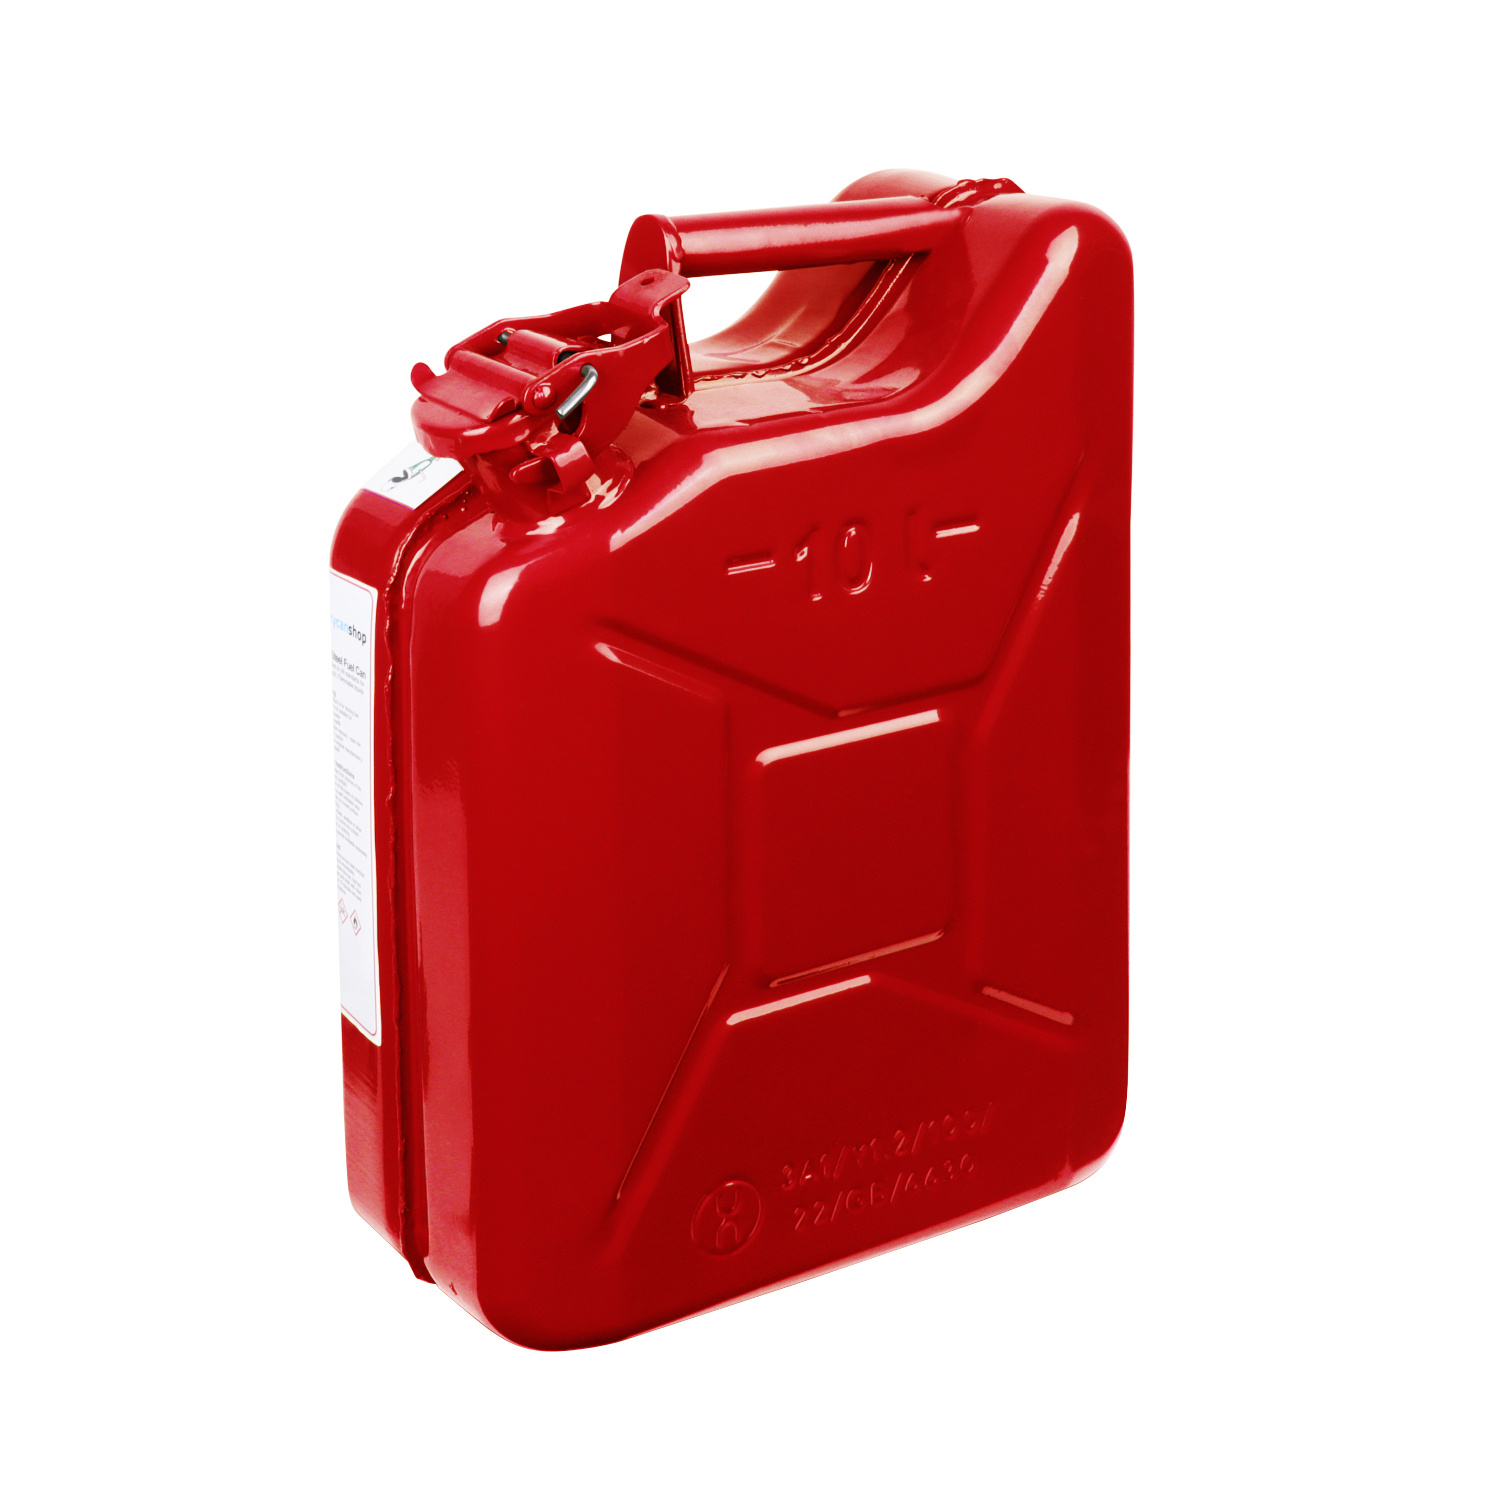 10 Liter Metall Kanister für Benzin & Diesel - Rot 